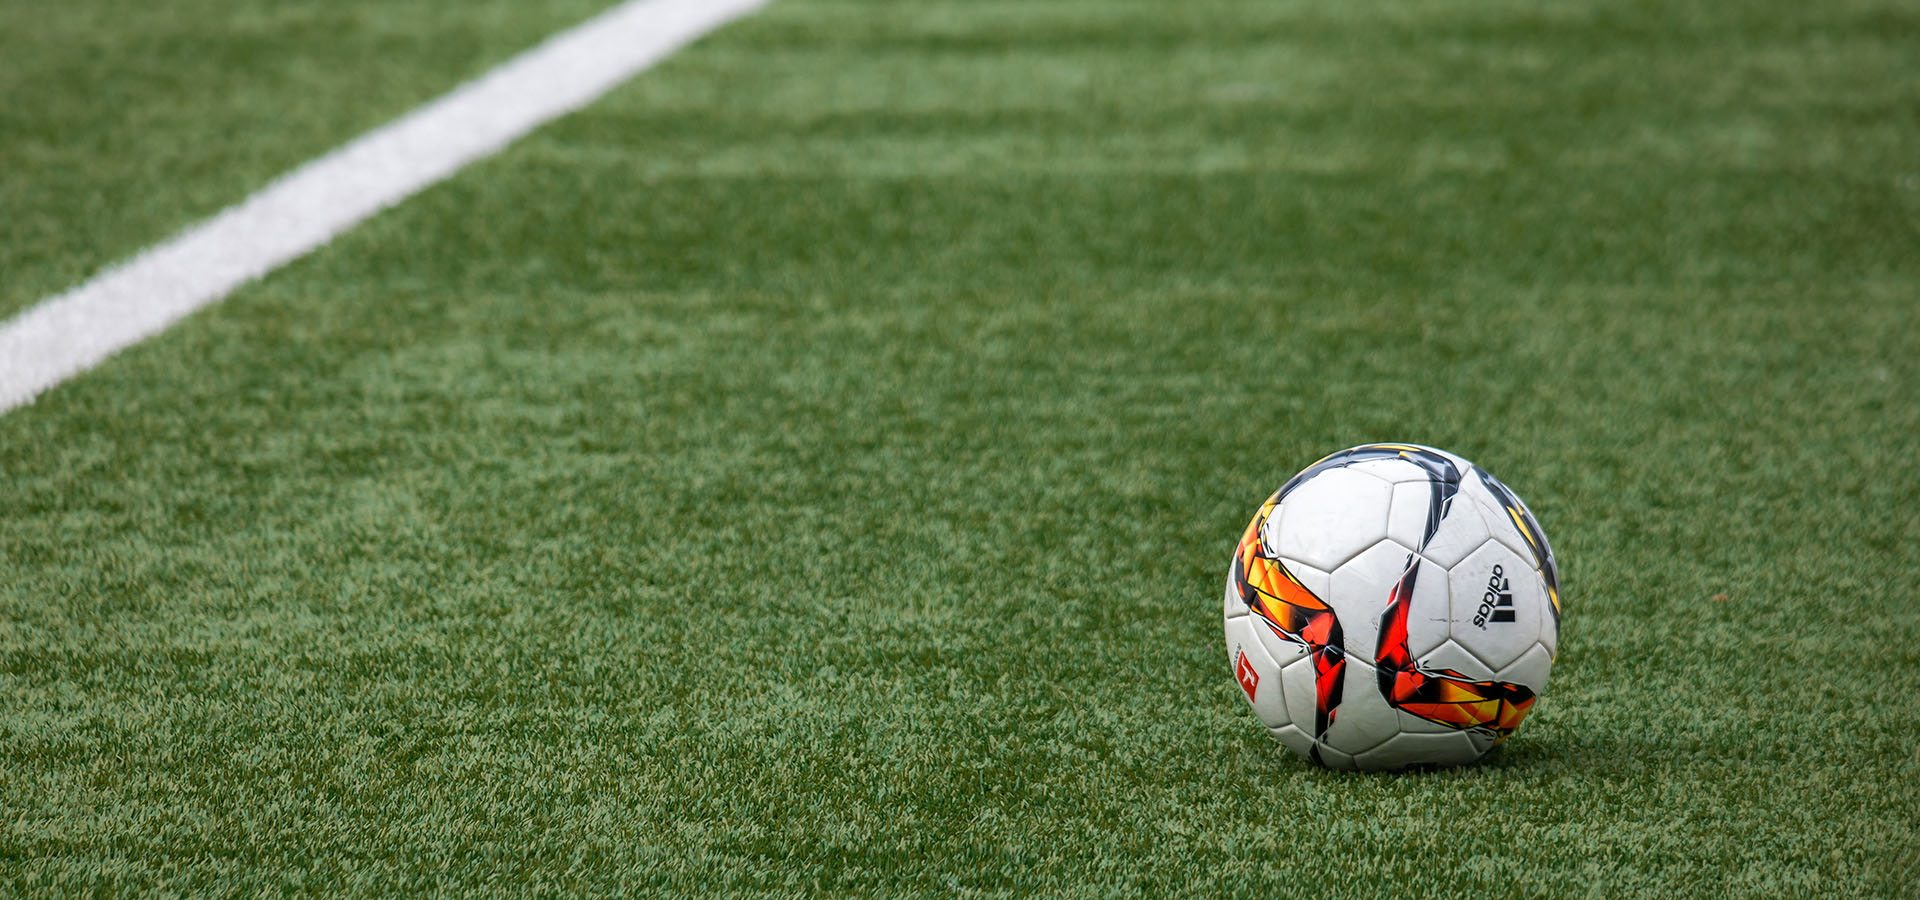 Стандарт РФС Требования к устройству и эксплуатации футбольных полей с искусственным покрытием